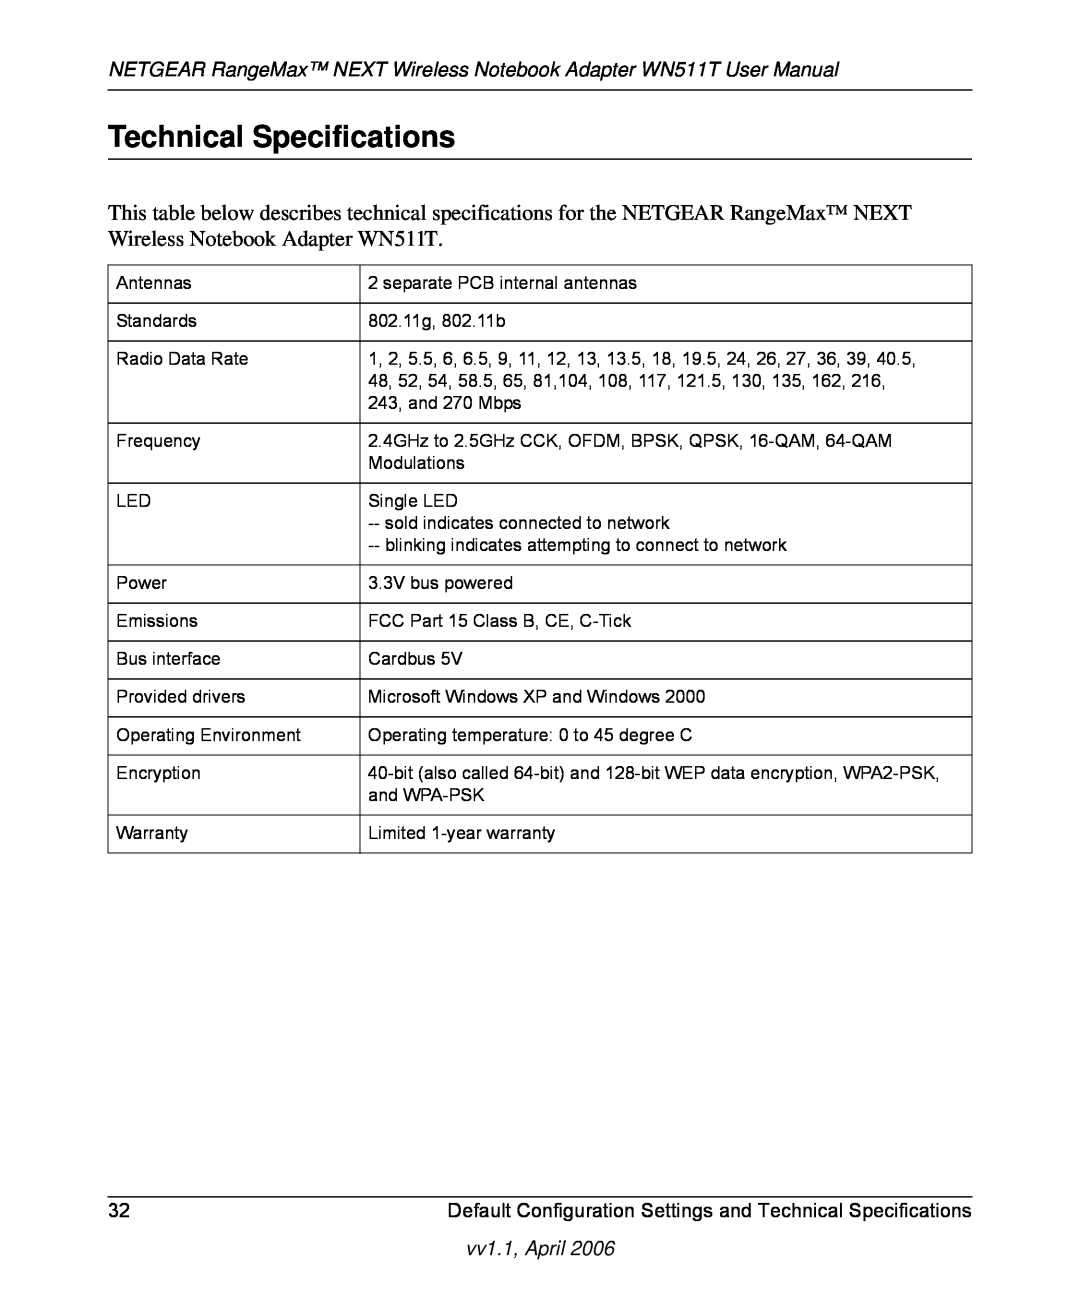 NETGEAR Technical Specifications, NETGEAR RangeMax NEXT Wireless Notebook Adapter WN511T User Manual, vv1.1, April 